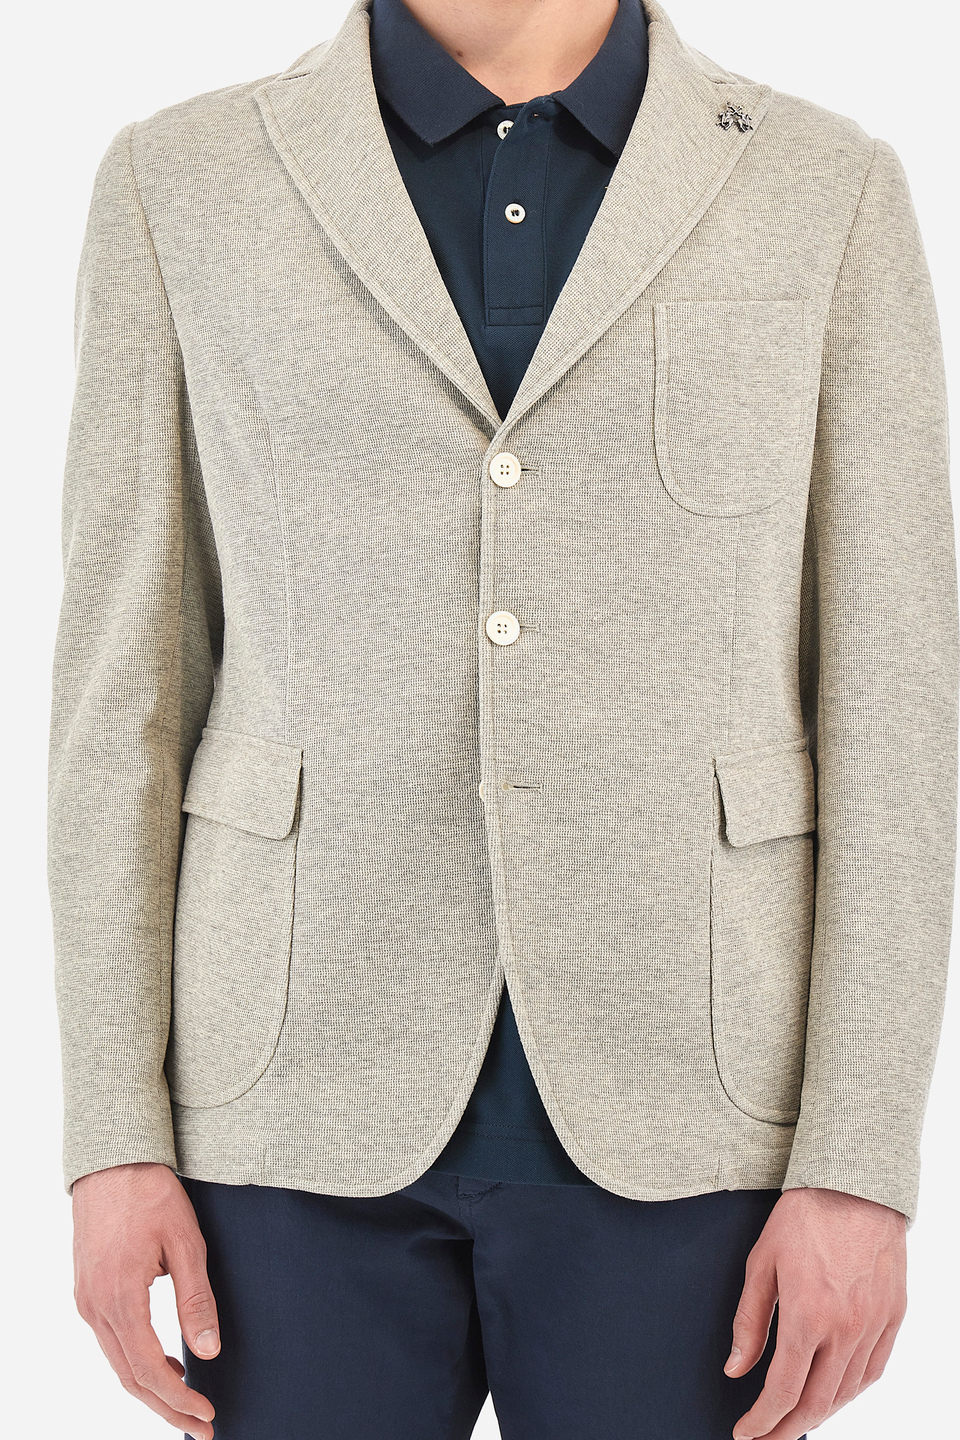 Men's jacket in regular fit cotton blend fabric - Vojin | La Martina - Official Online Shop